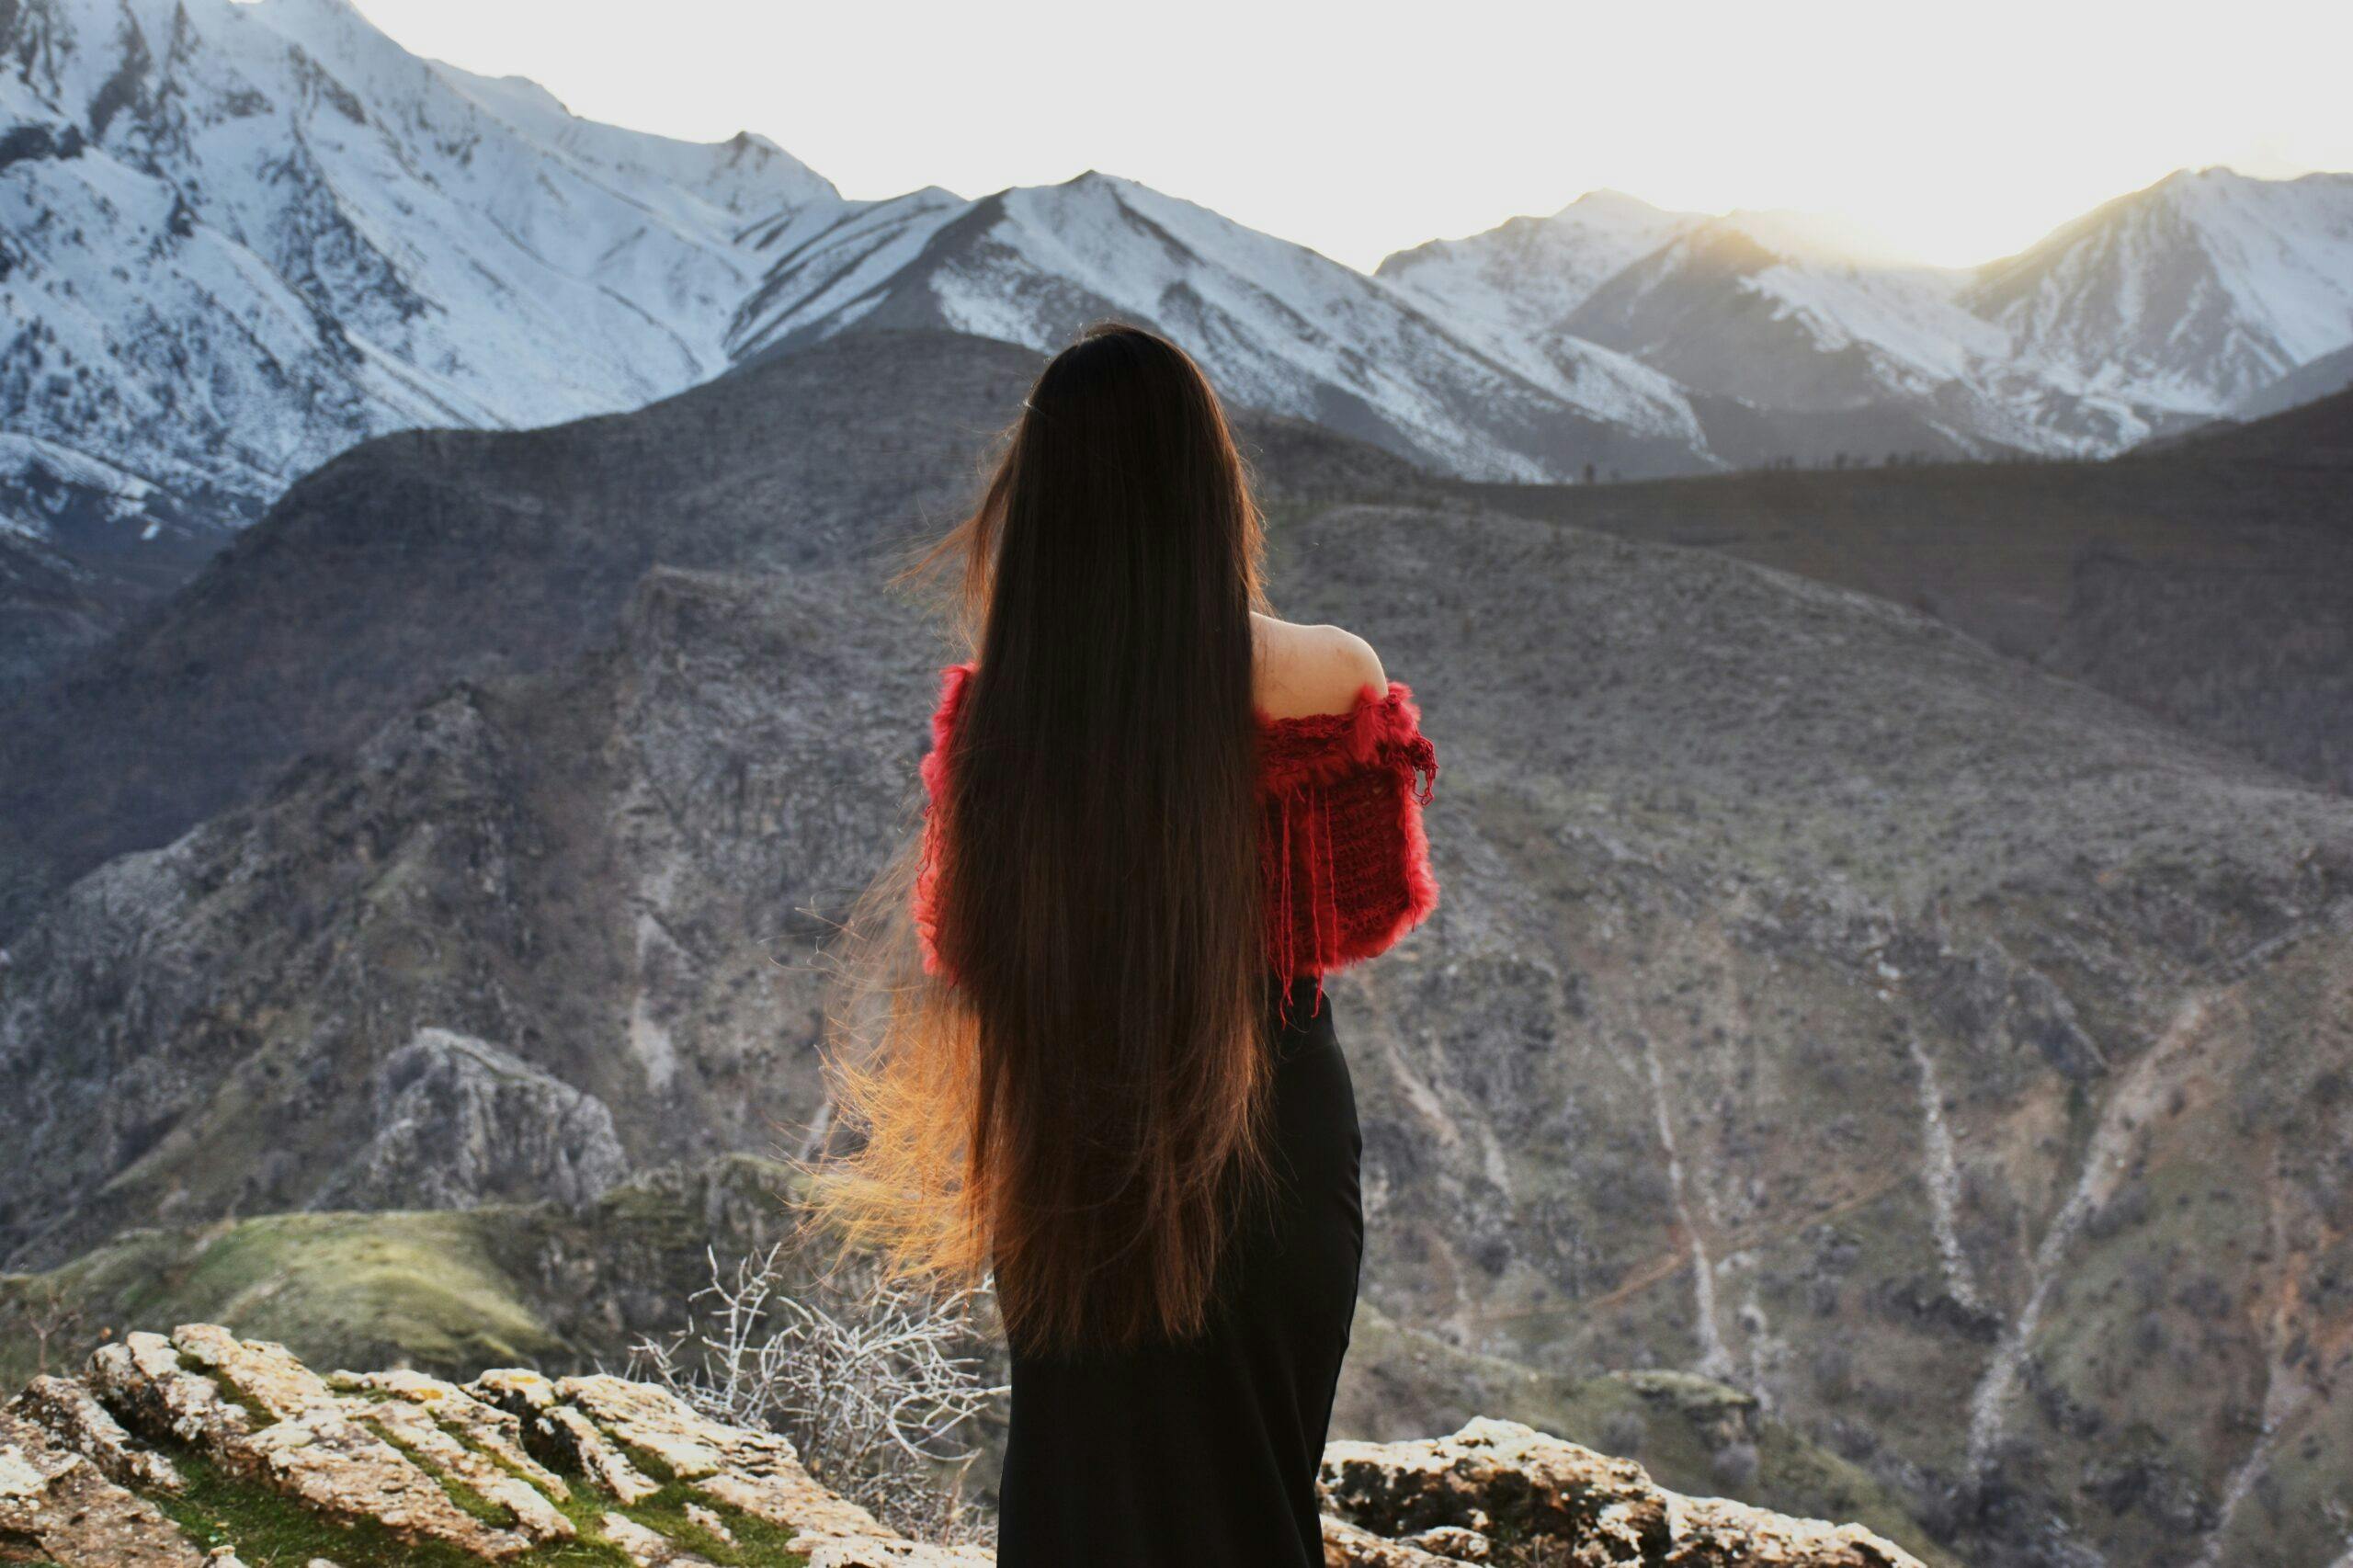 یک زن کرد ایرانی در کوهستان زاگرس: در آرزوی رهایی و استقلال، آرزوی مشترک با همه زنان جهان (عکس: شاتراستاک)